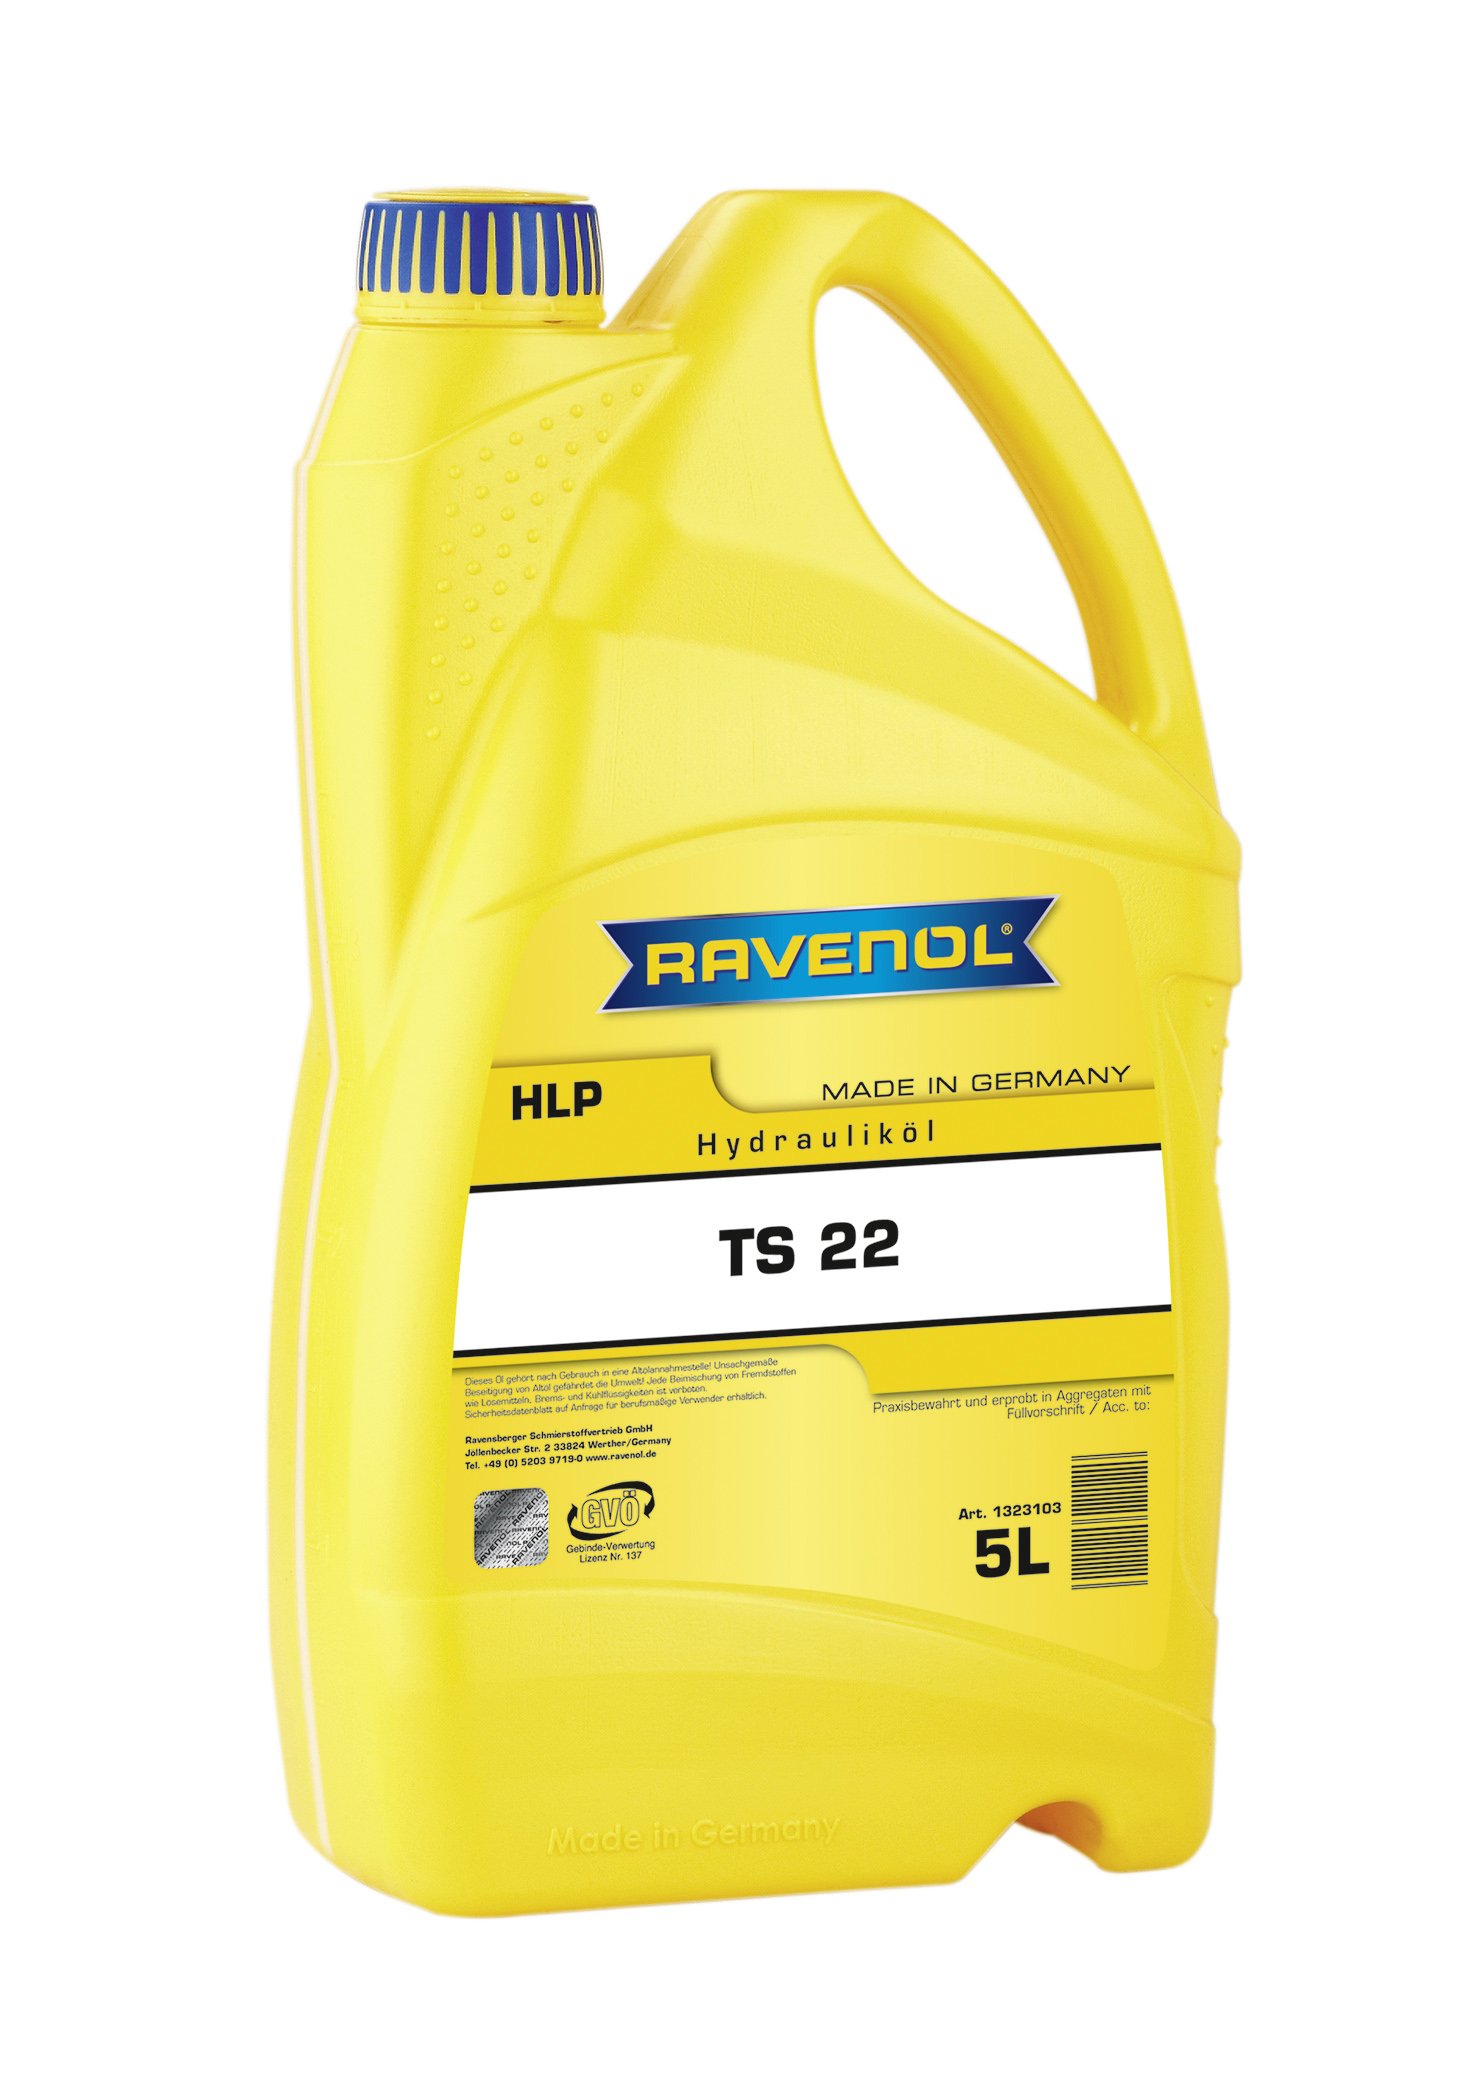 RAVENOL Hydraulikoel TS 22 (HLP) von RAVENOL